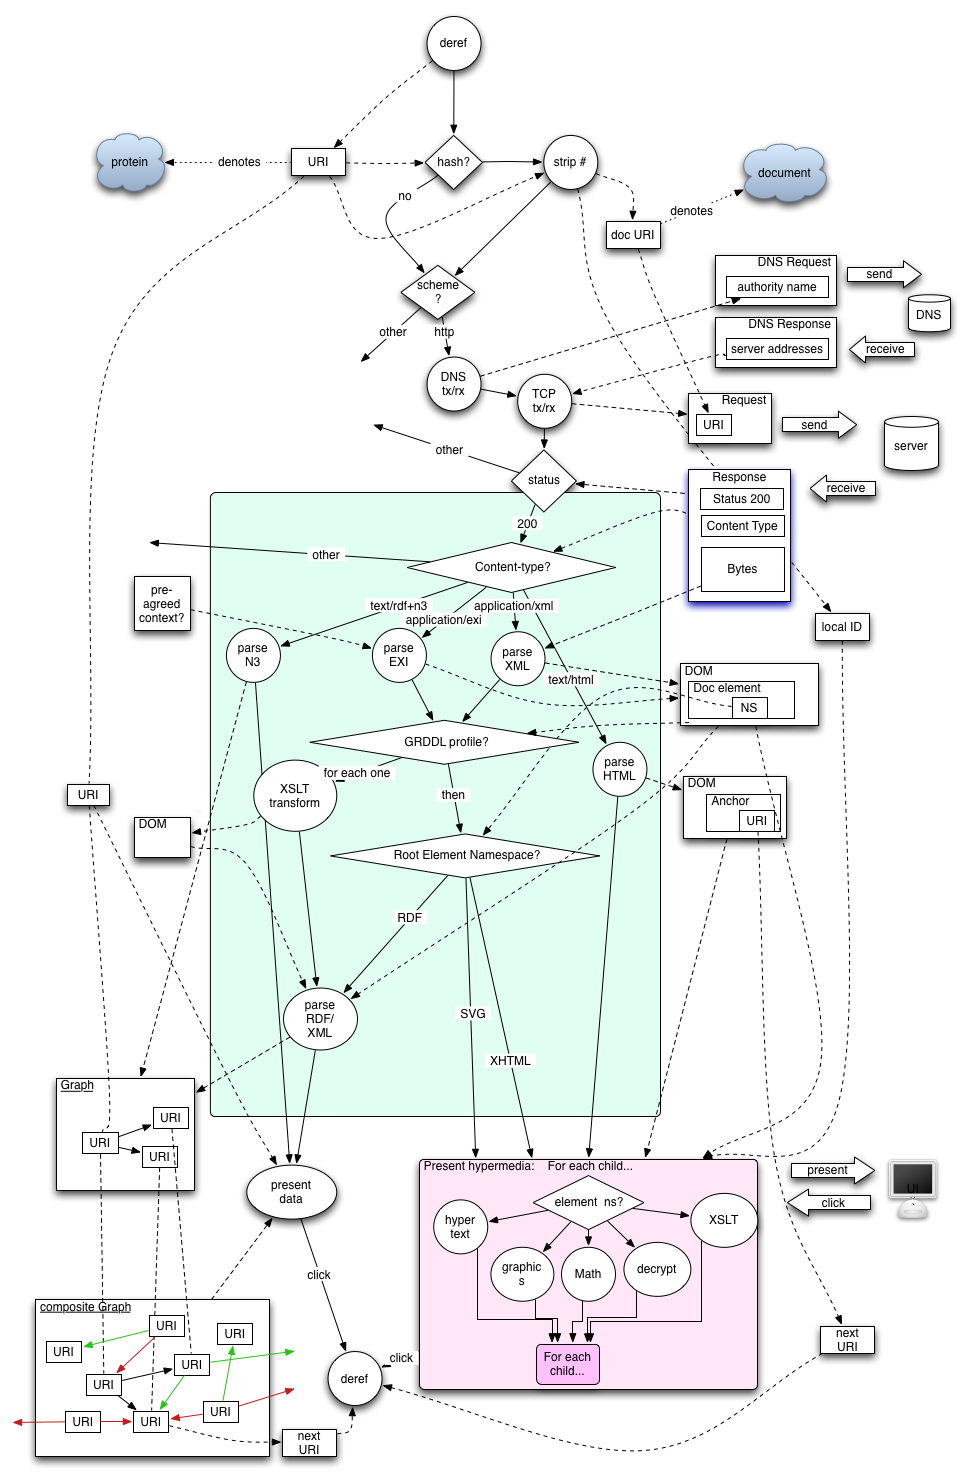 Flow diagram of the Web's retrieval algorithm